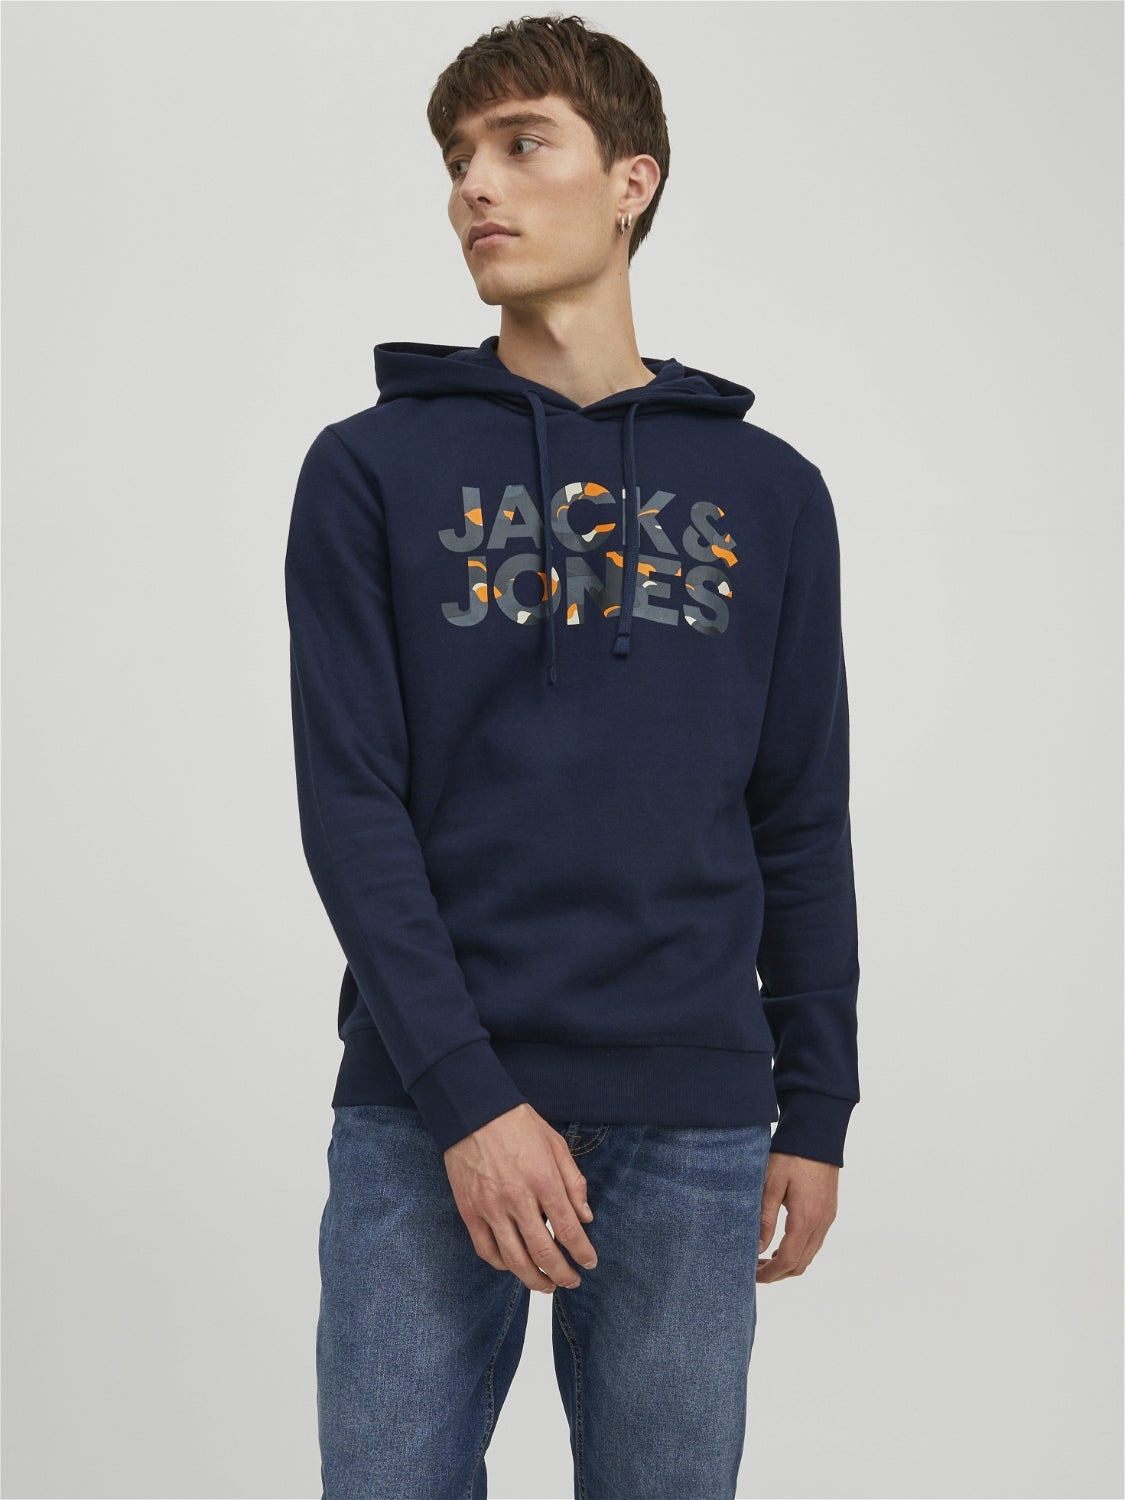 Jack & Jones sweatshirt HERREN Pullovers & Sweatshirts Hoodie Dunkelblau M Rabatt 58 % 